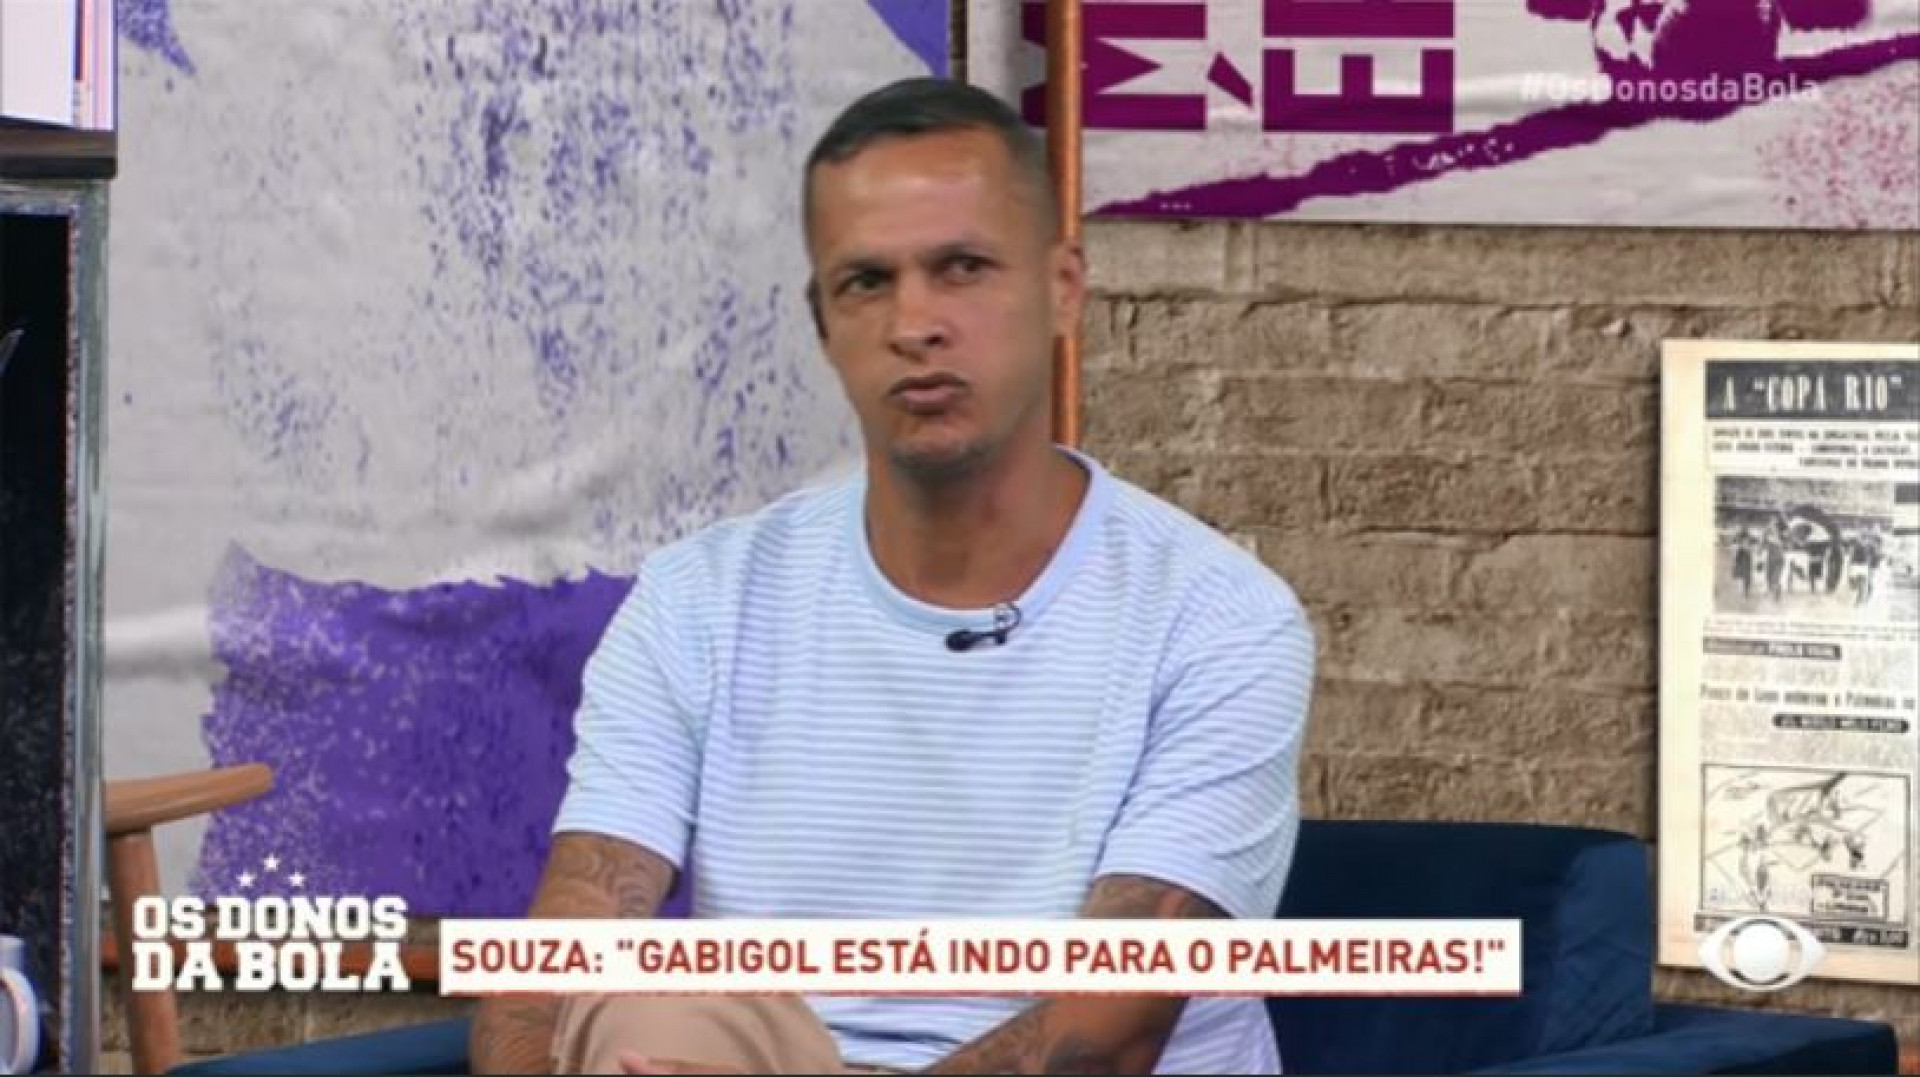 Ex-jogador Souza fala de interesse de Gabigol em ir para o Palmeiras - Reprodução site BAND